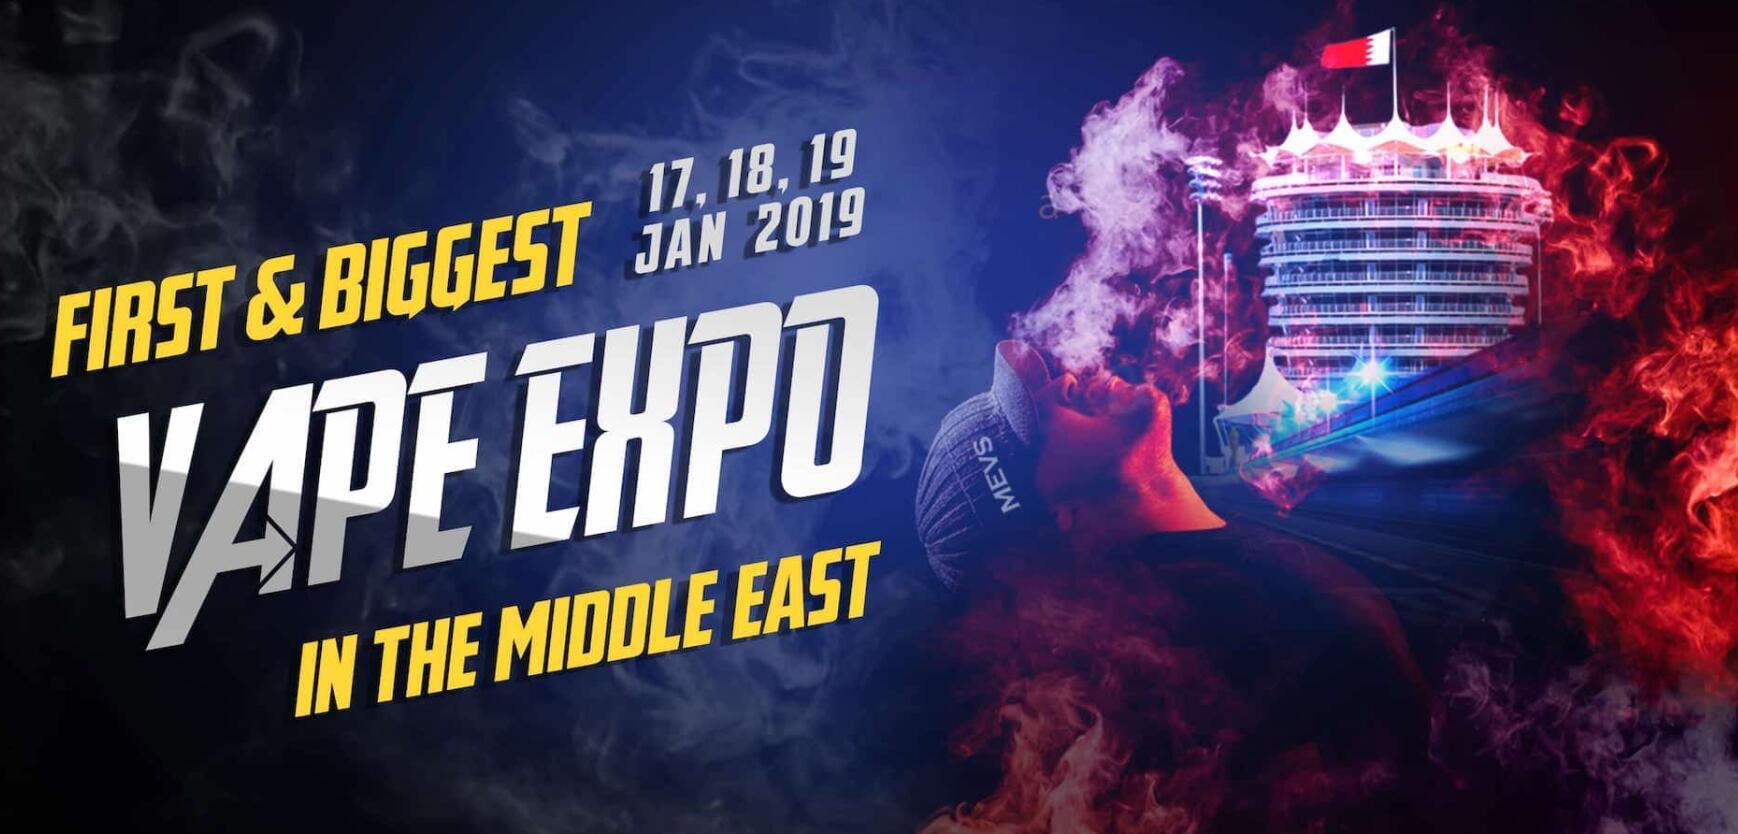 中东vape节目将于2019年1月17日至19日举行